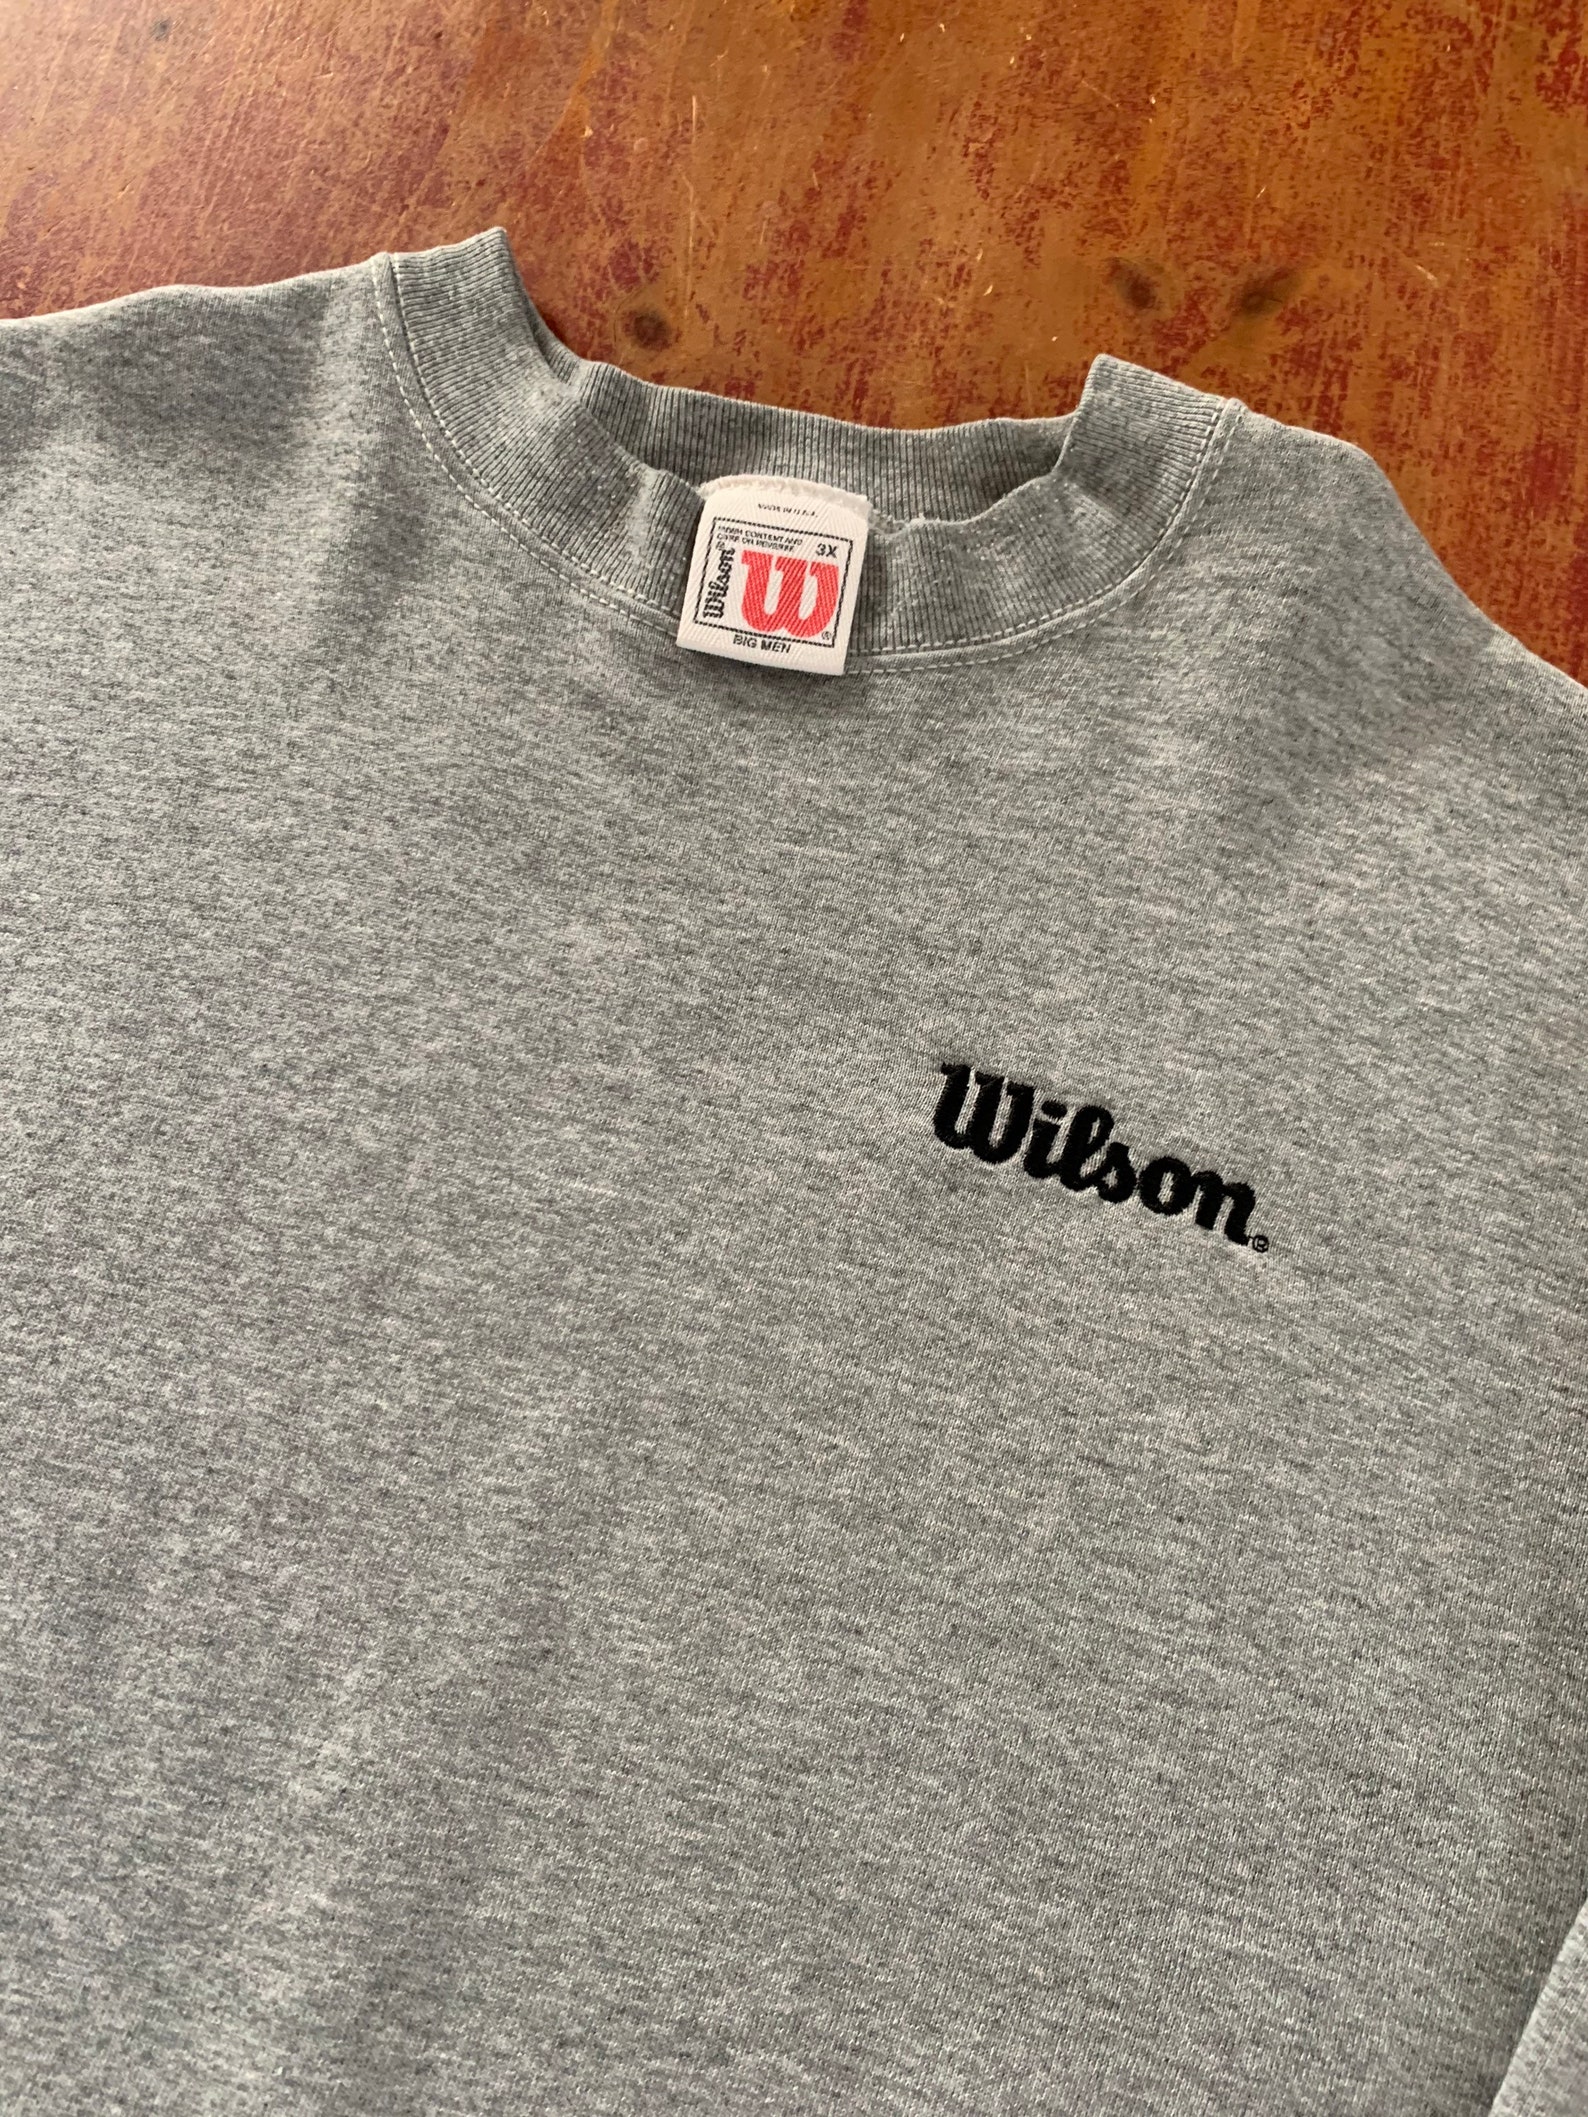 Vintage Wilson Brand Crewneck Sweatshirt Size 3XL XXXL Classic | Etsy